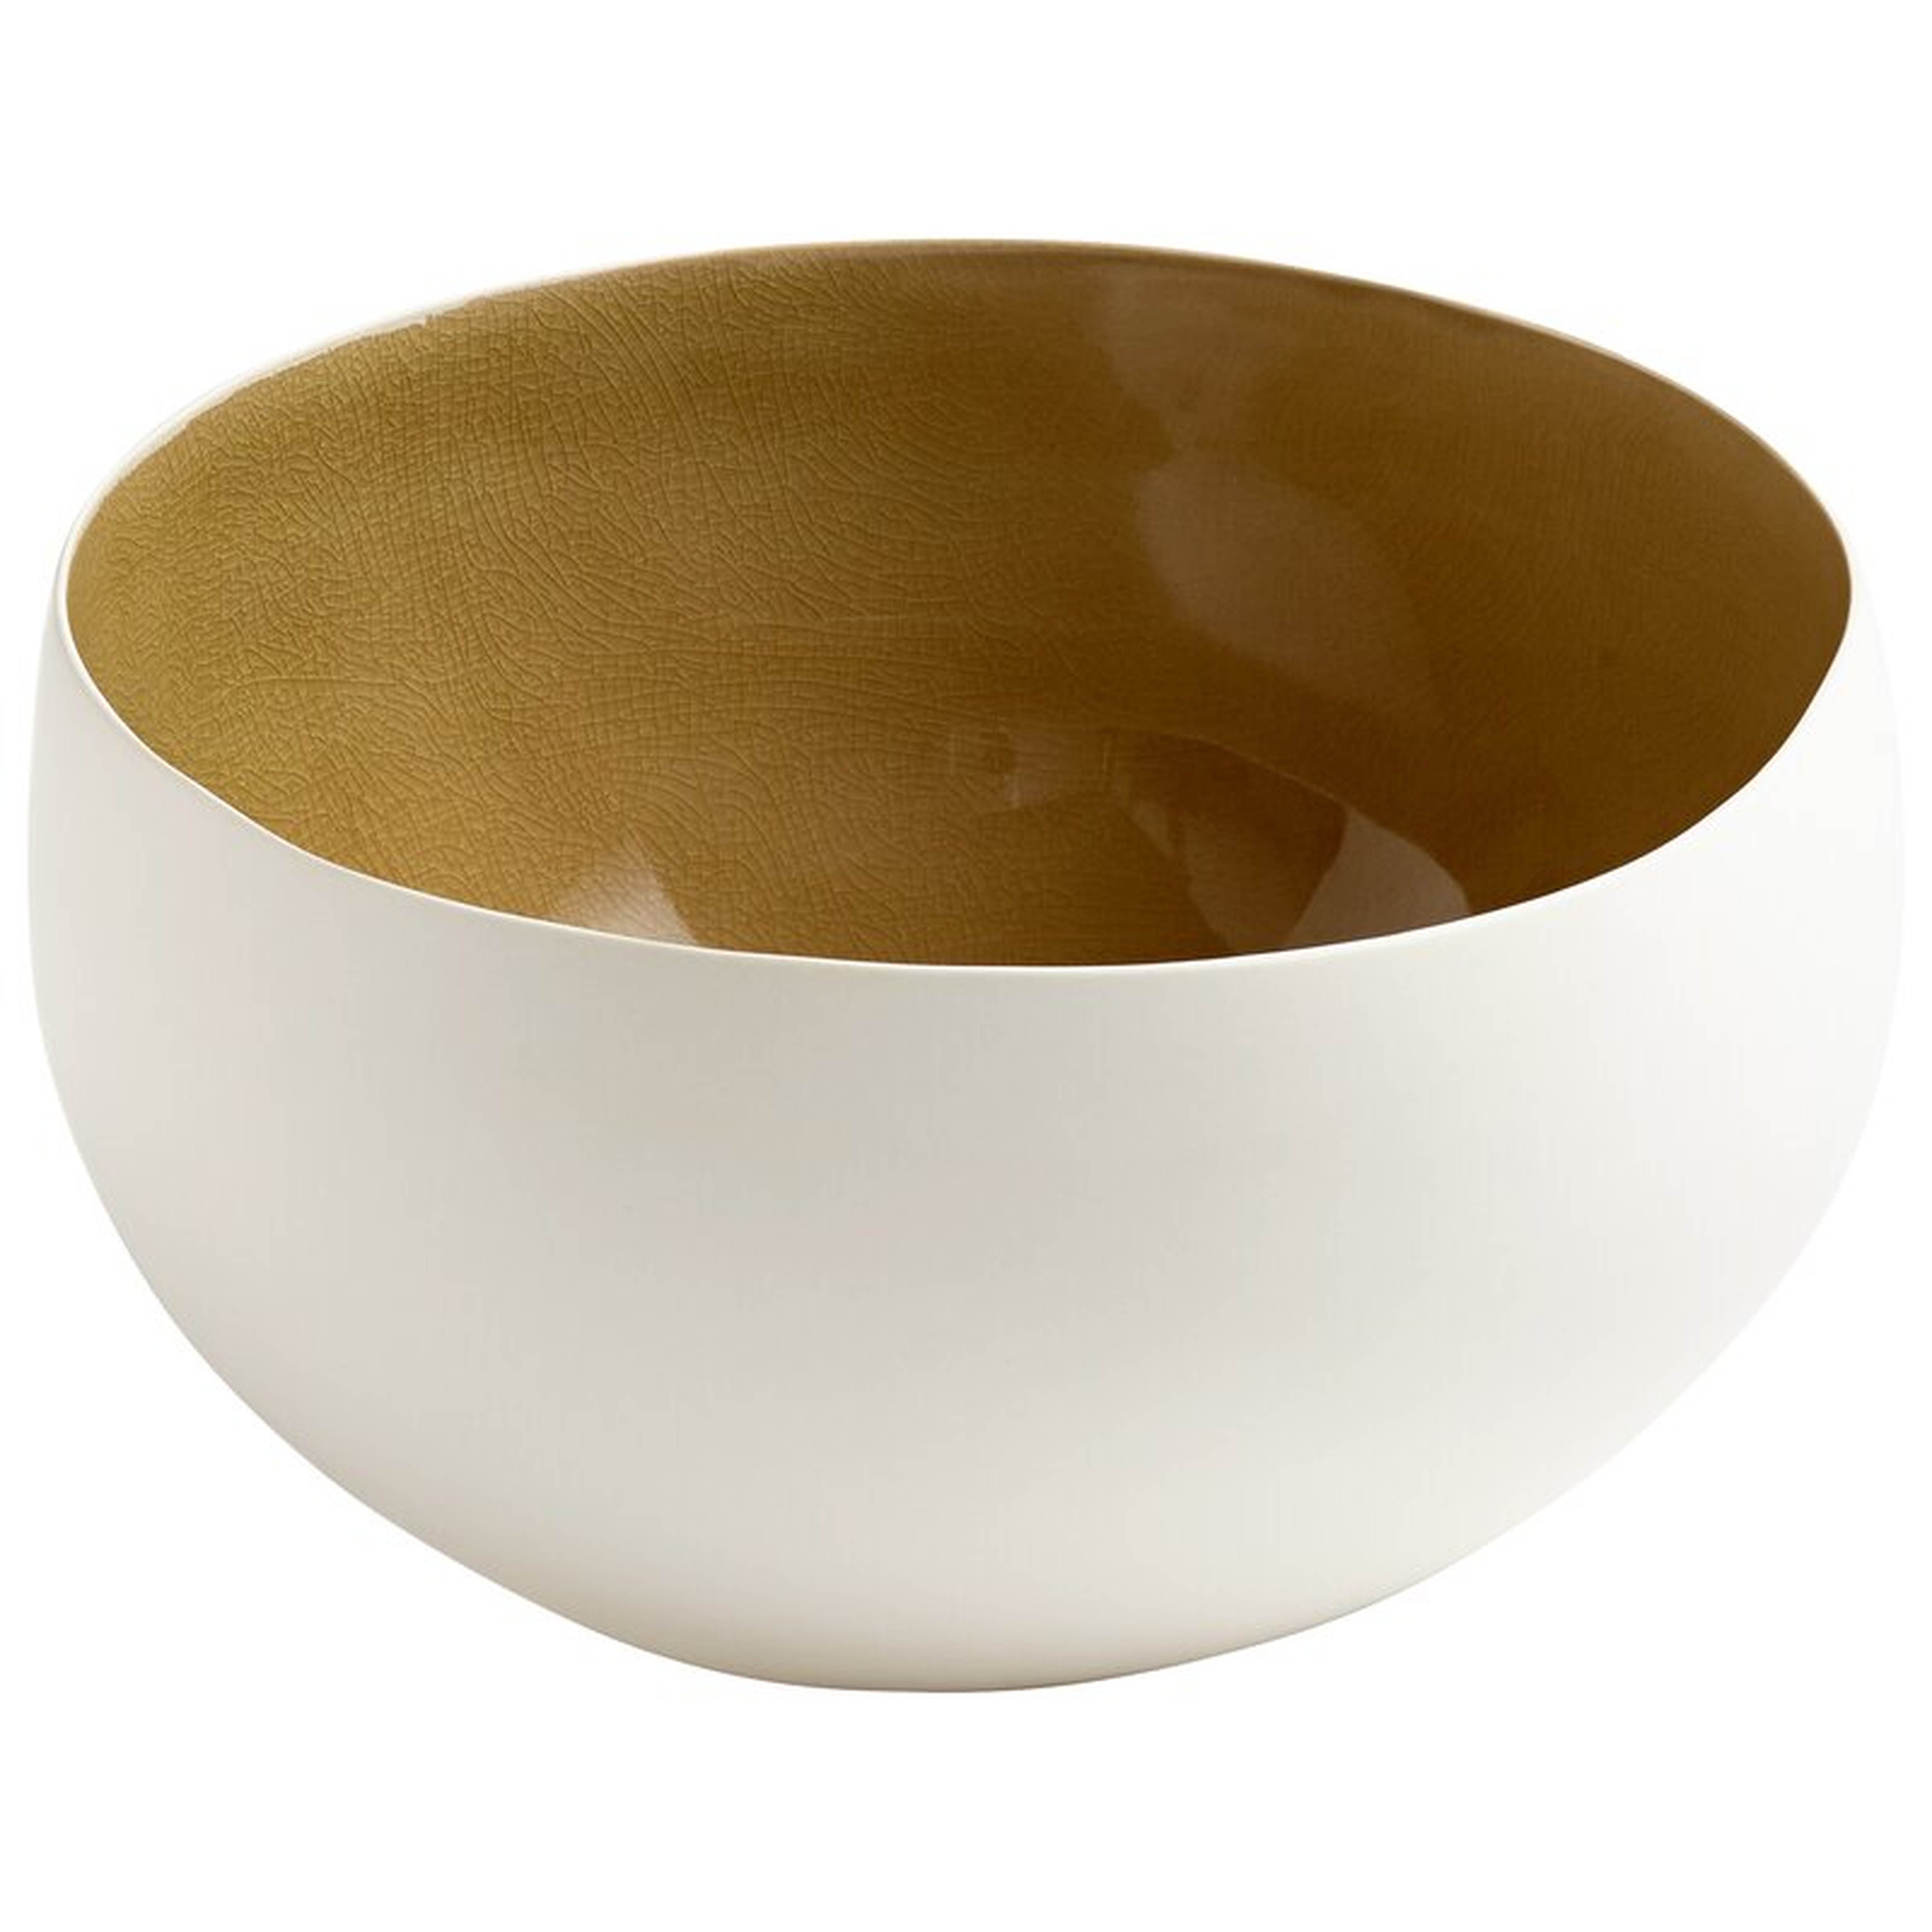 Cyan Design Latte Decorative Bowl Size: 6" H x 10.25" W x 10.25" D - Perigold